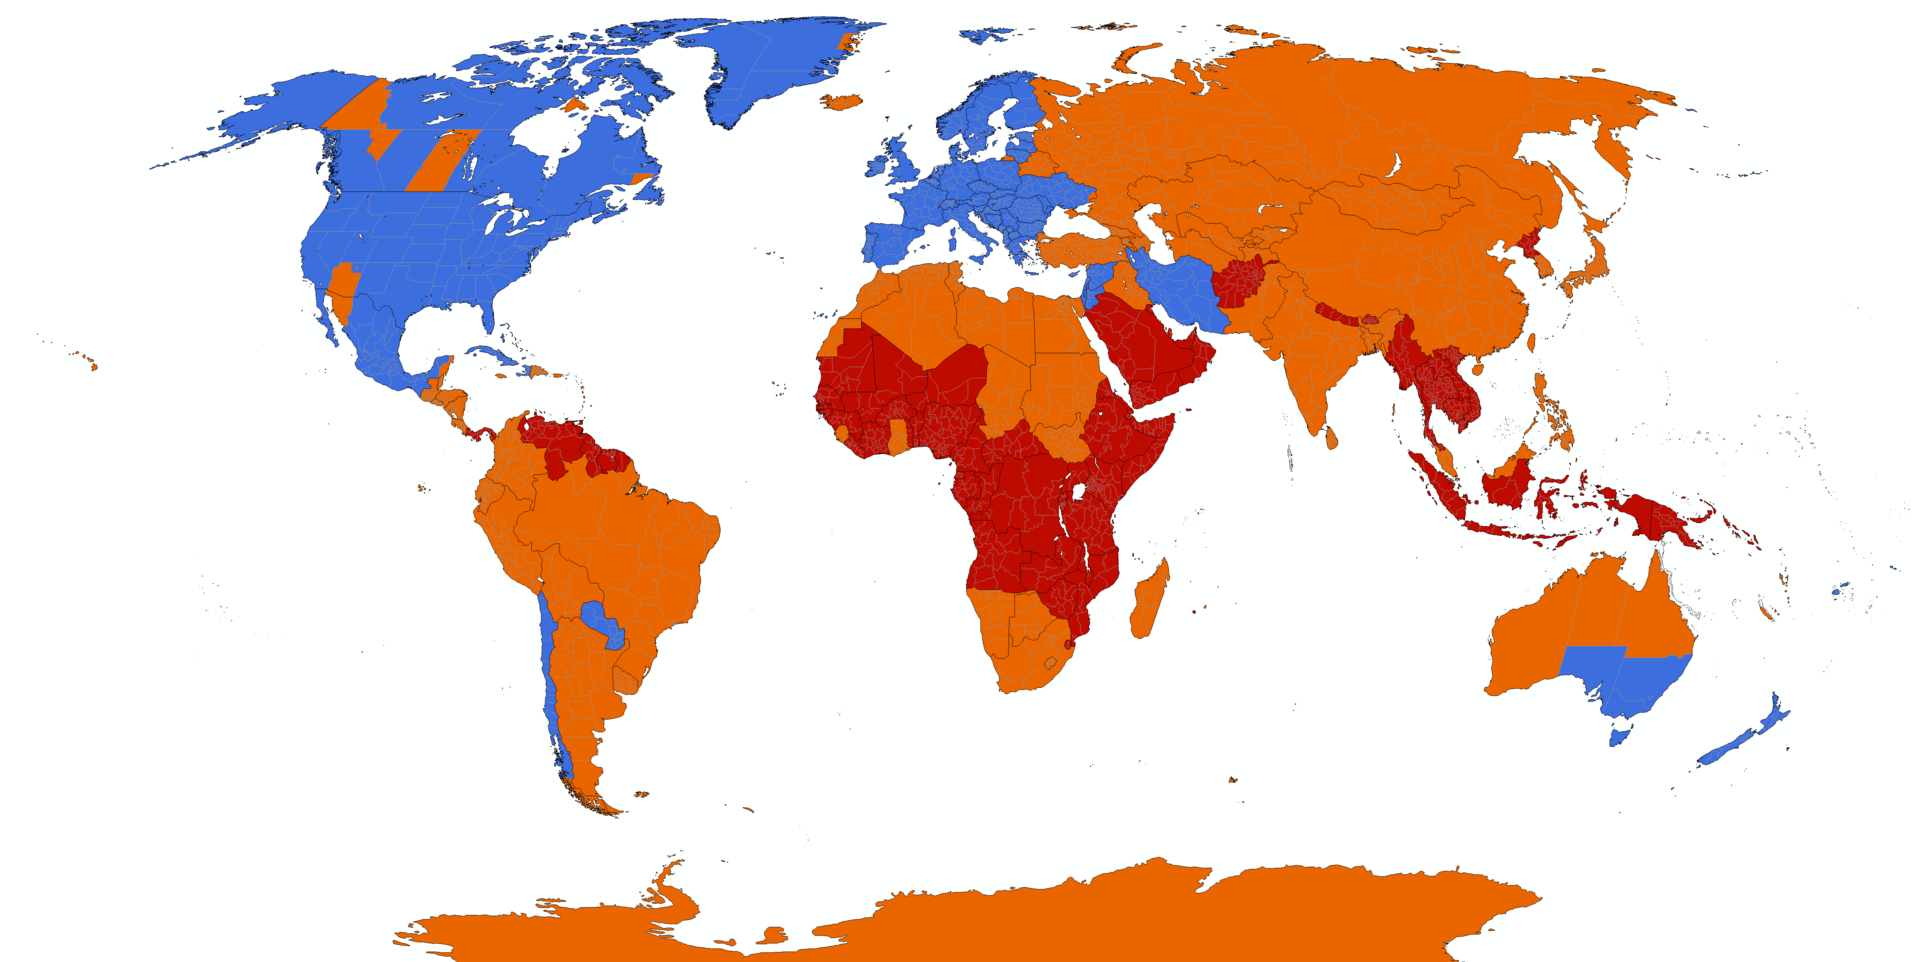 Синие – регионы, где применяется переход на летнее время; оранжевые – регионы, где переход на летнее время был отменен; красные – регионы, где перехода на летнее время никогда не было/Фото: Wikipedia/Изображение кликабельное